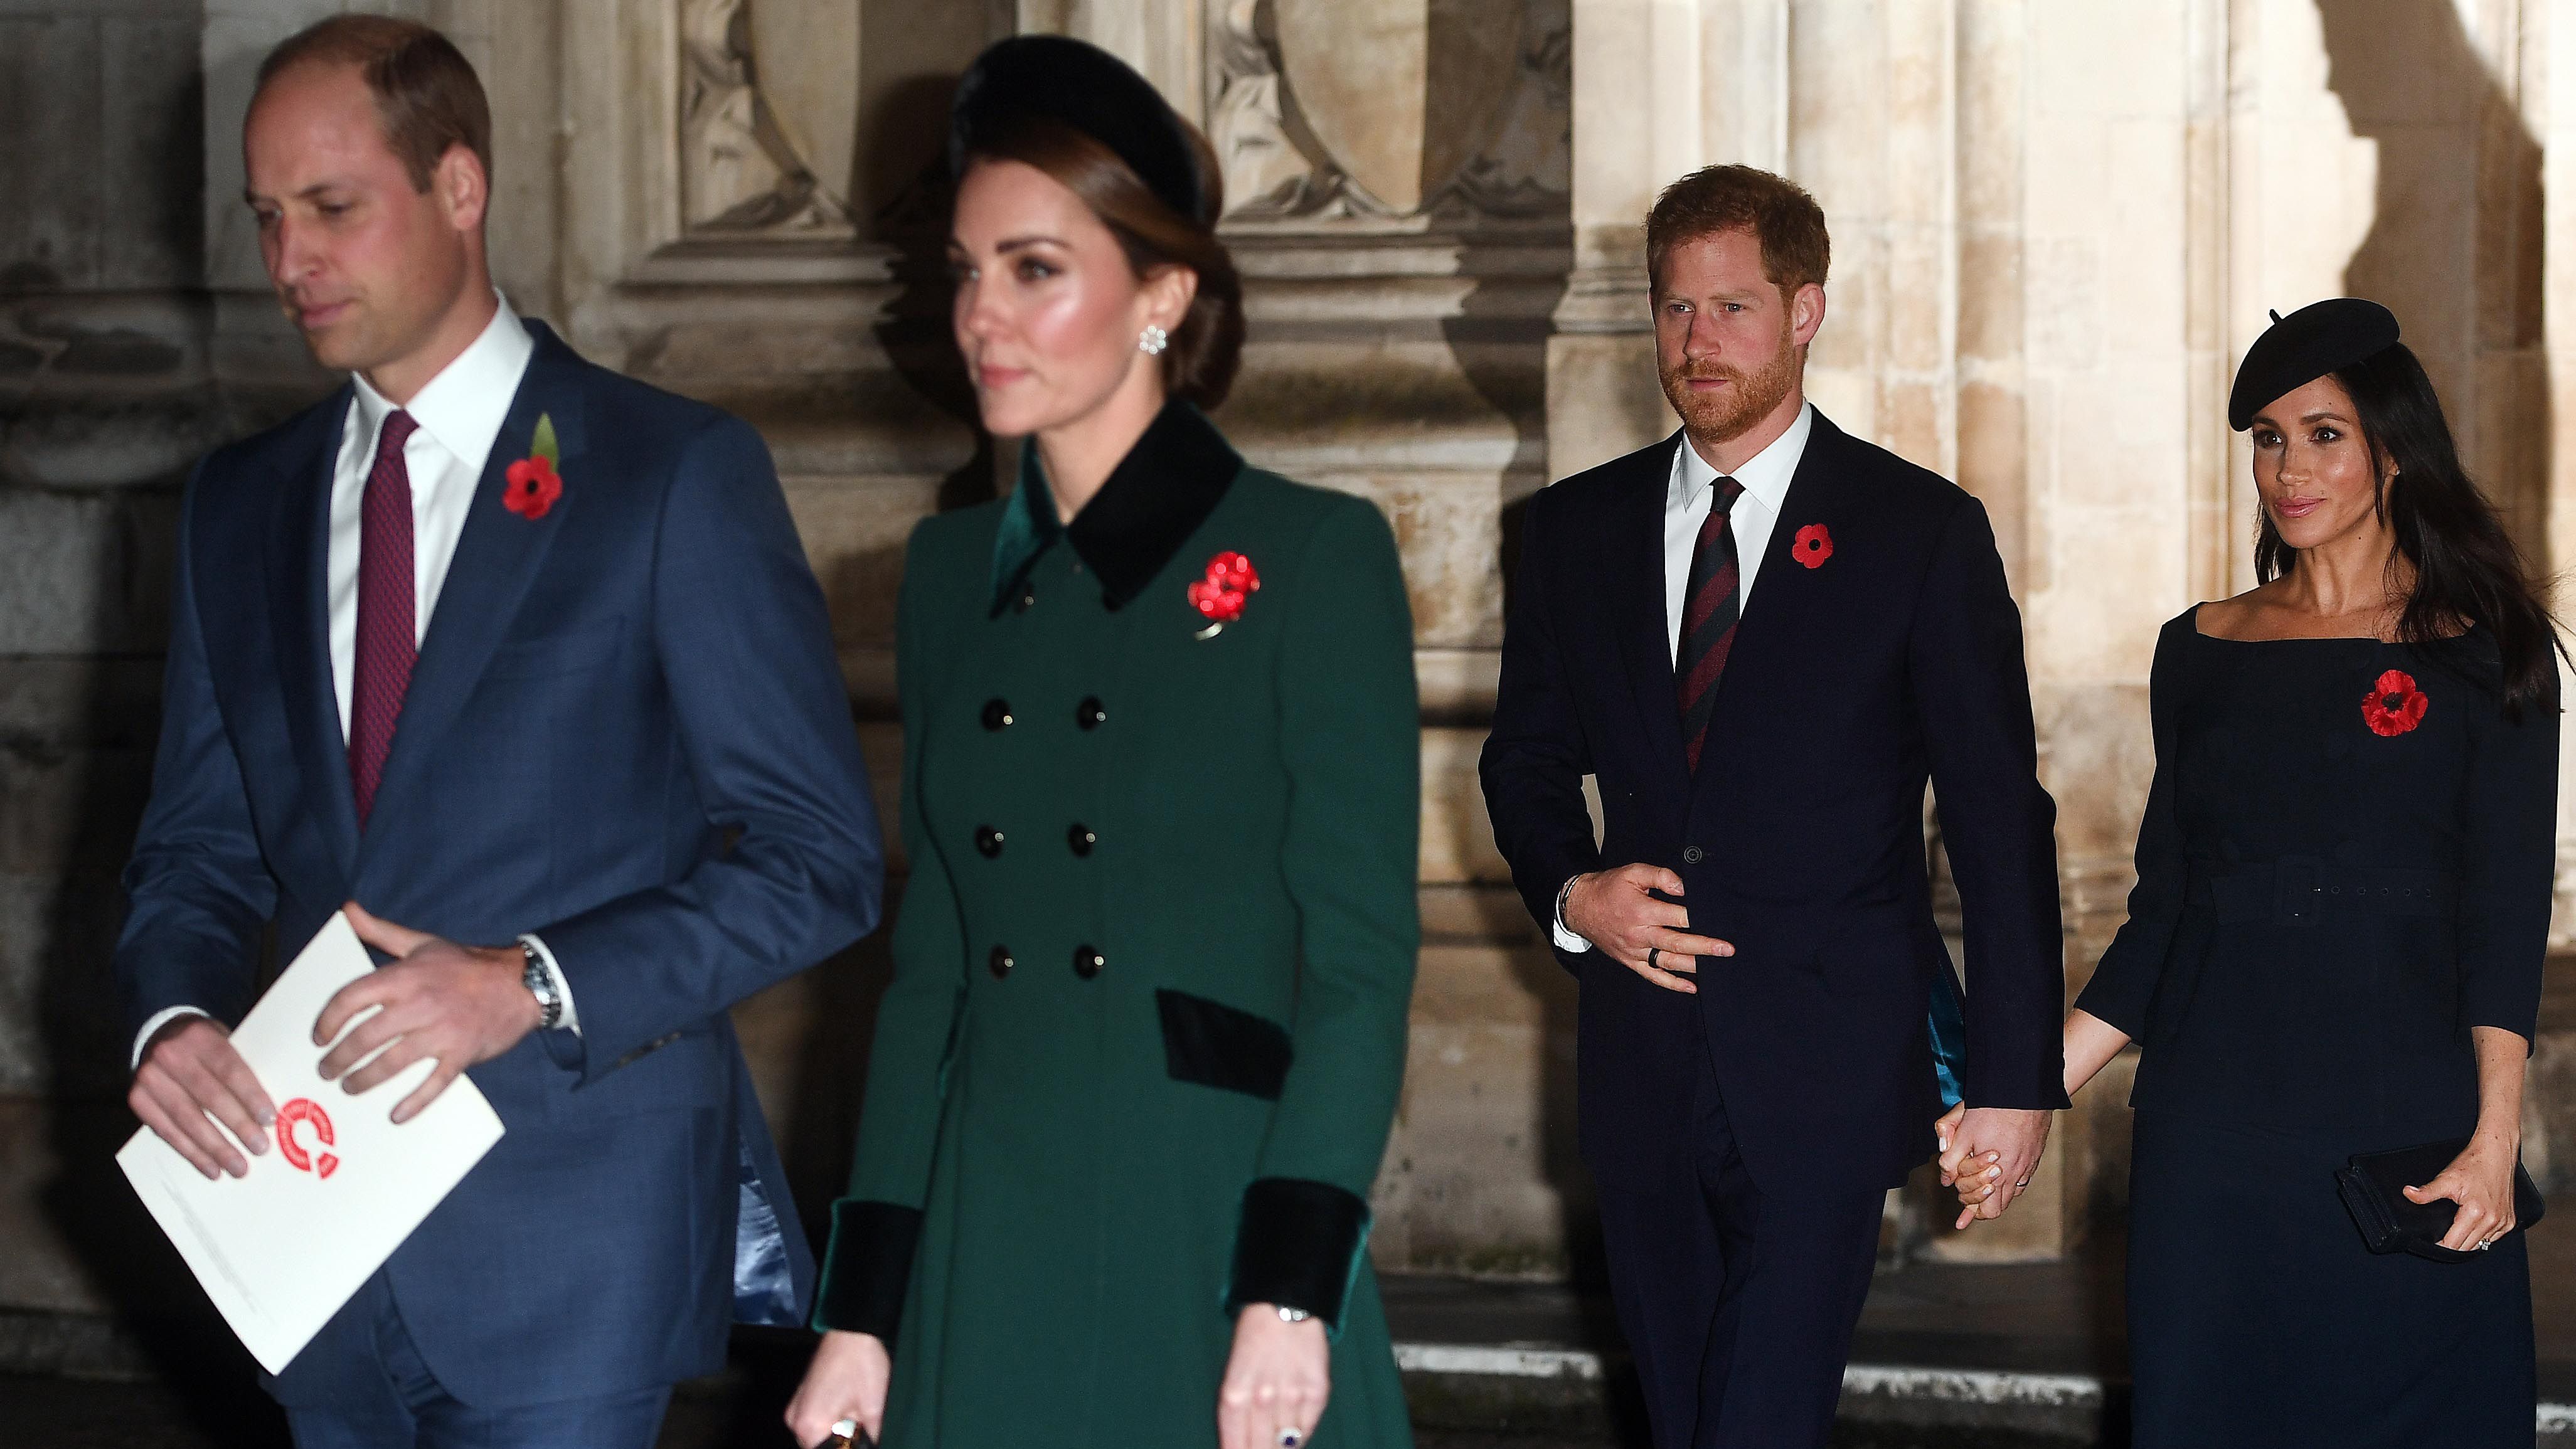 Aunque fueron apodados los “Fab Four” (Cuatro Fantásticos), William, su esposa Kate Middleton y Harry y Meghan ya no trabajan juntos y casi no participan en actos oficiales juntos